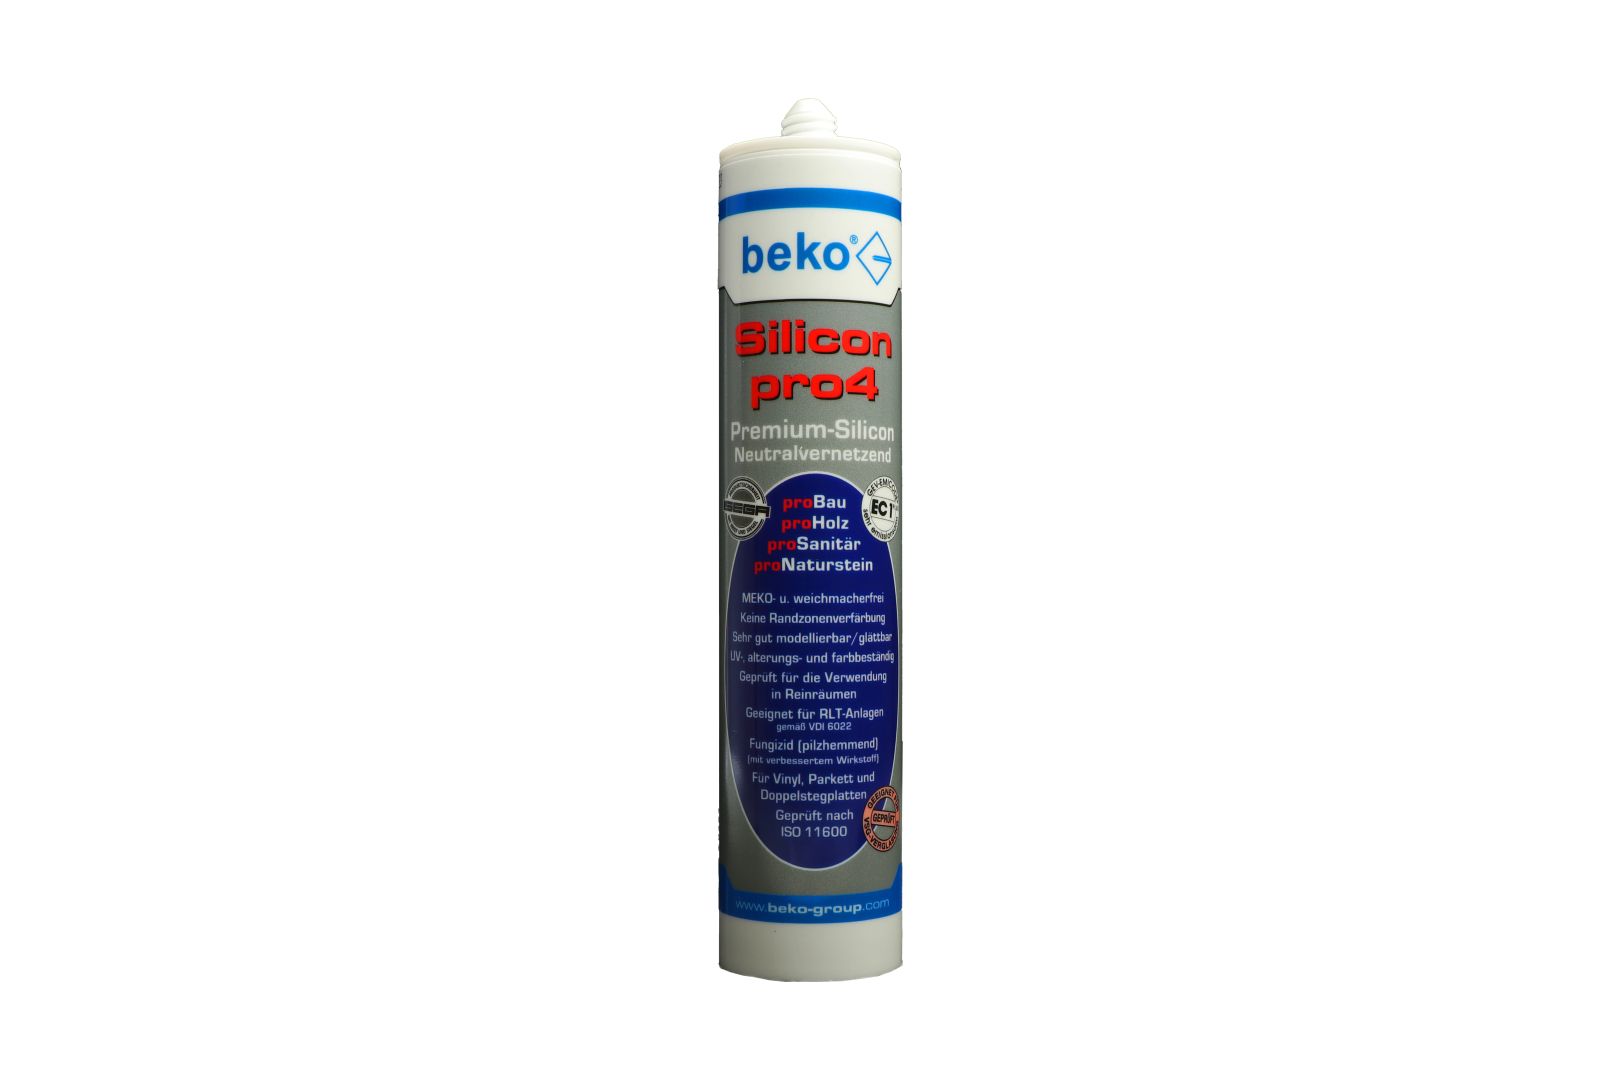 beko Silicon pro4, Premium-Silicon, Silikon-Dichtstoff, neutralvernetzend, blassbraun/teak, 310 ml